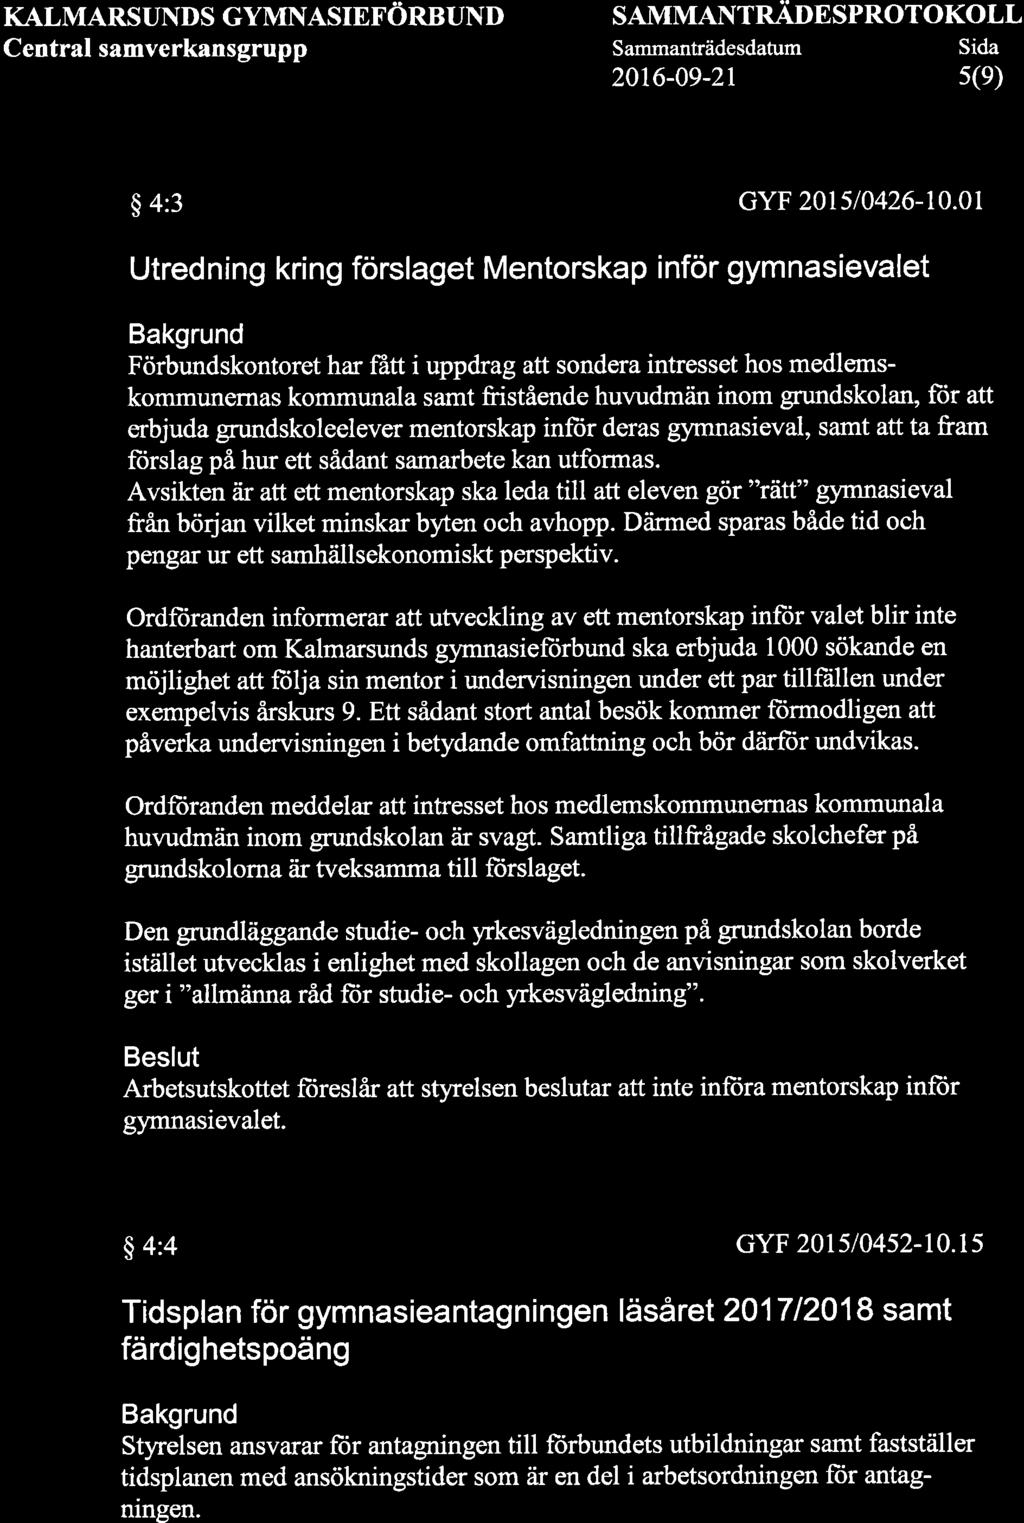 KALMARSUNDS GYMNASIEFöRBUND Central samverkansgrupp SAMMANTNÄONSPROTOKOLL Sammanträdesdatum Sida s(e) 2016-09-2r $ 4:3 cyf 2015/0426-10.